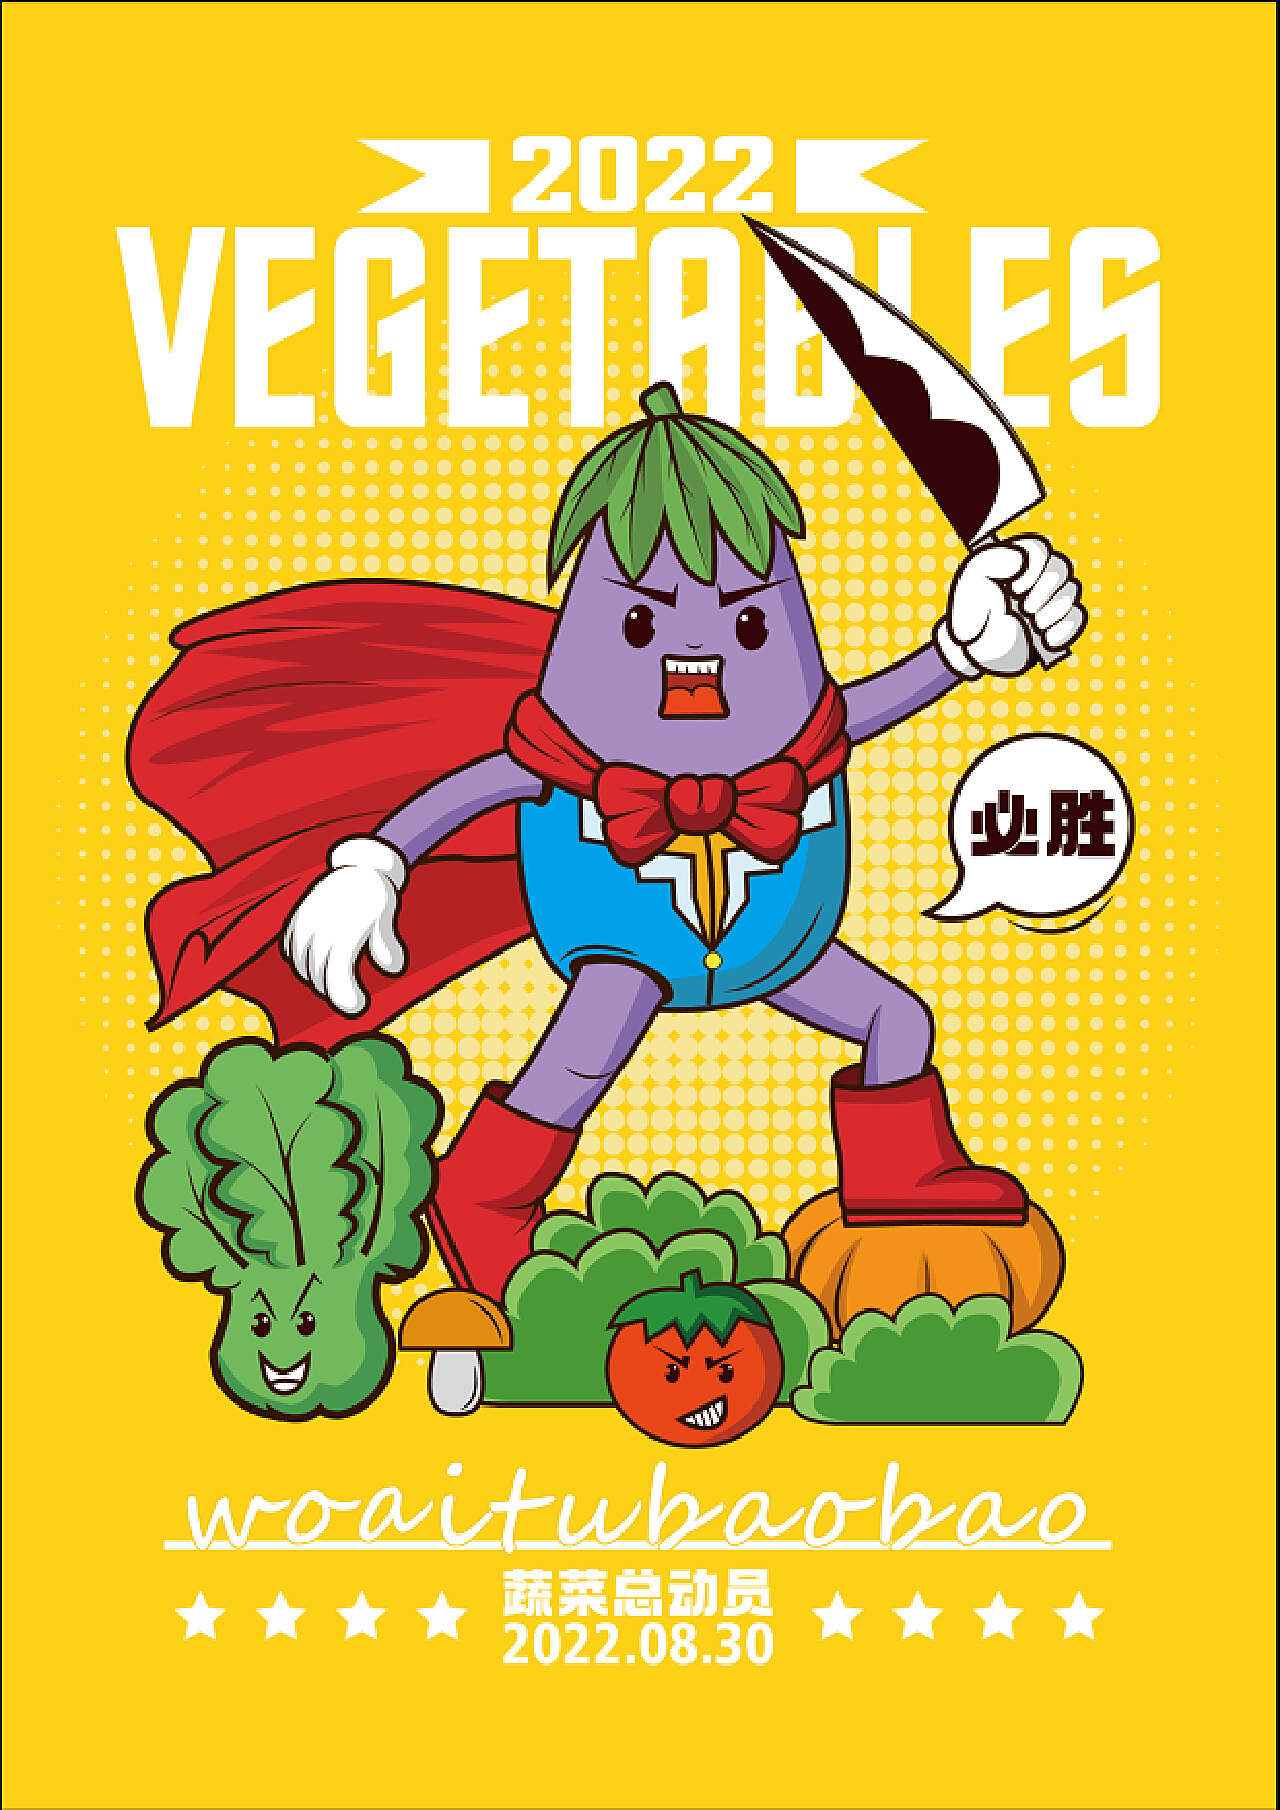 紫色茄子新鮮蔬菜卡通插圖手繪蔬菜插圖, 茄子剪貼畫, 長茄子, 有機茄子素材圖案，PSD和PNG圖片免費下載